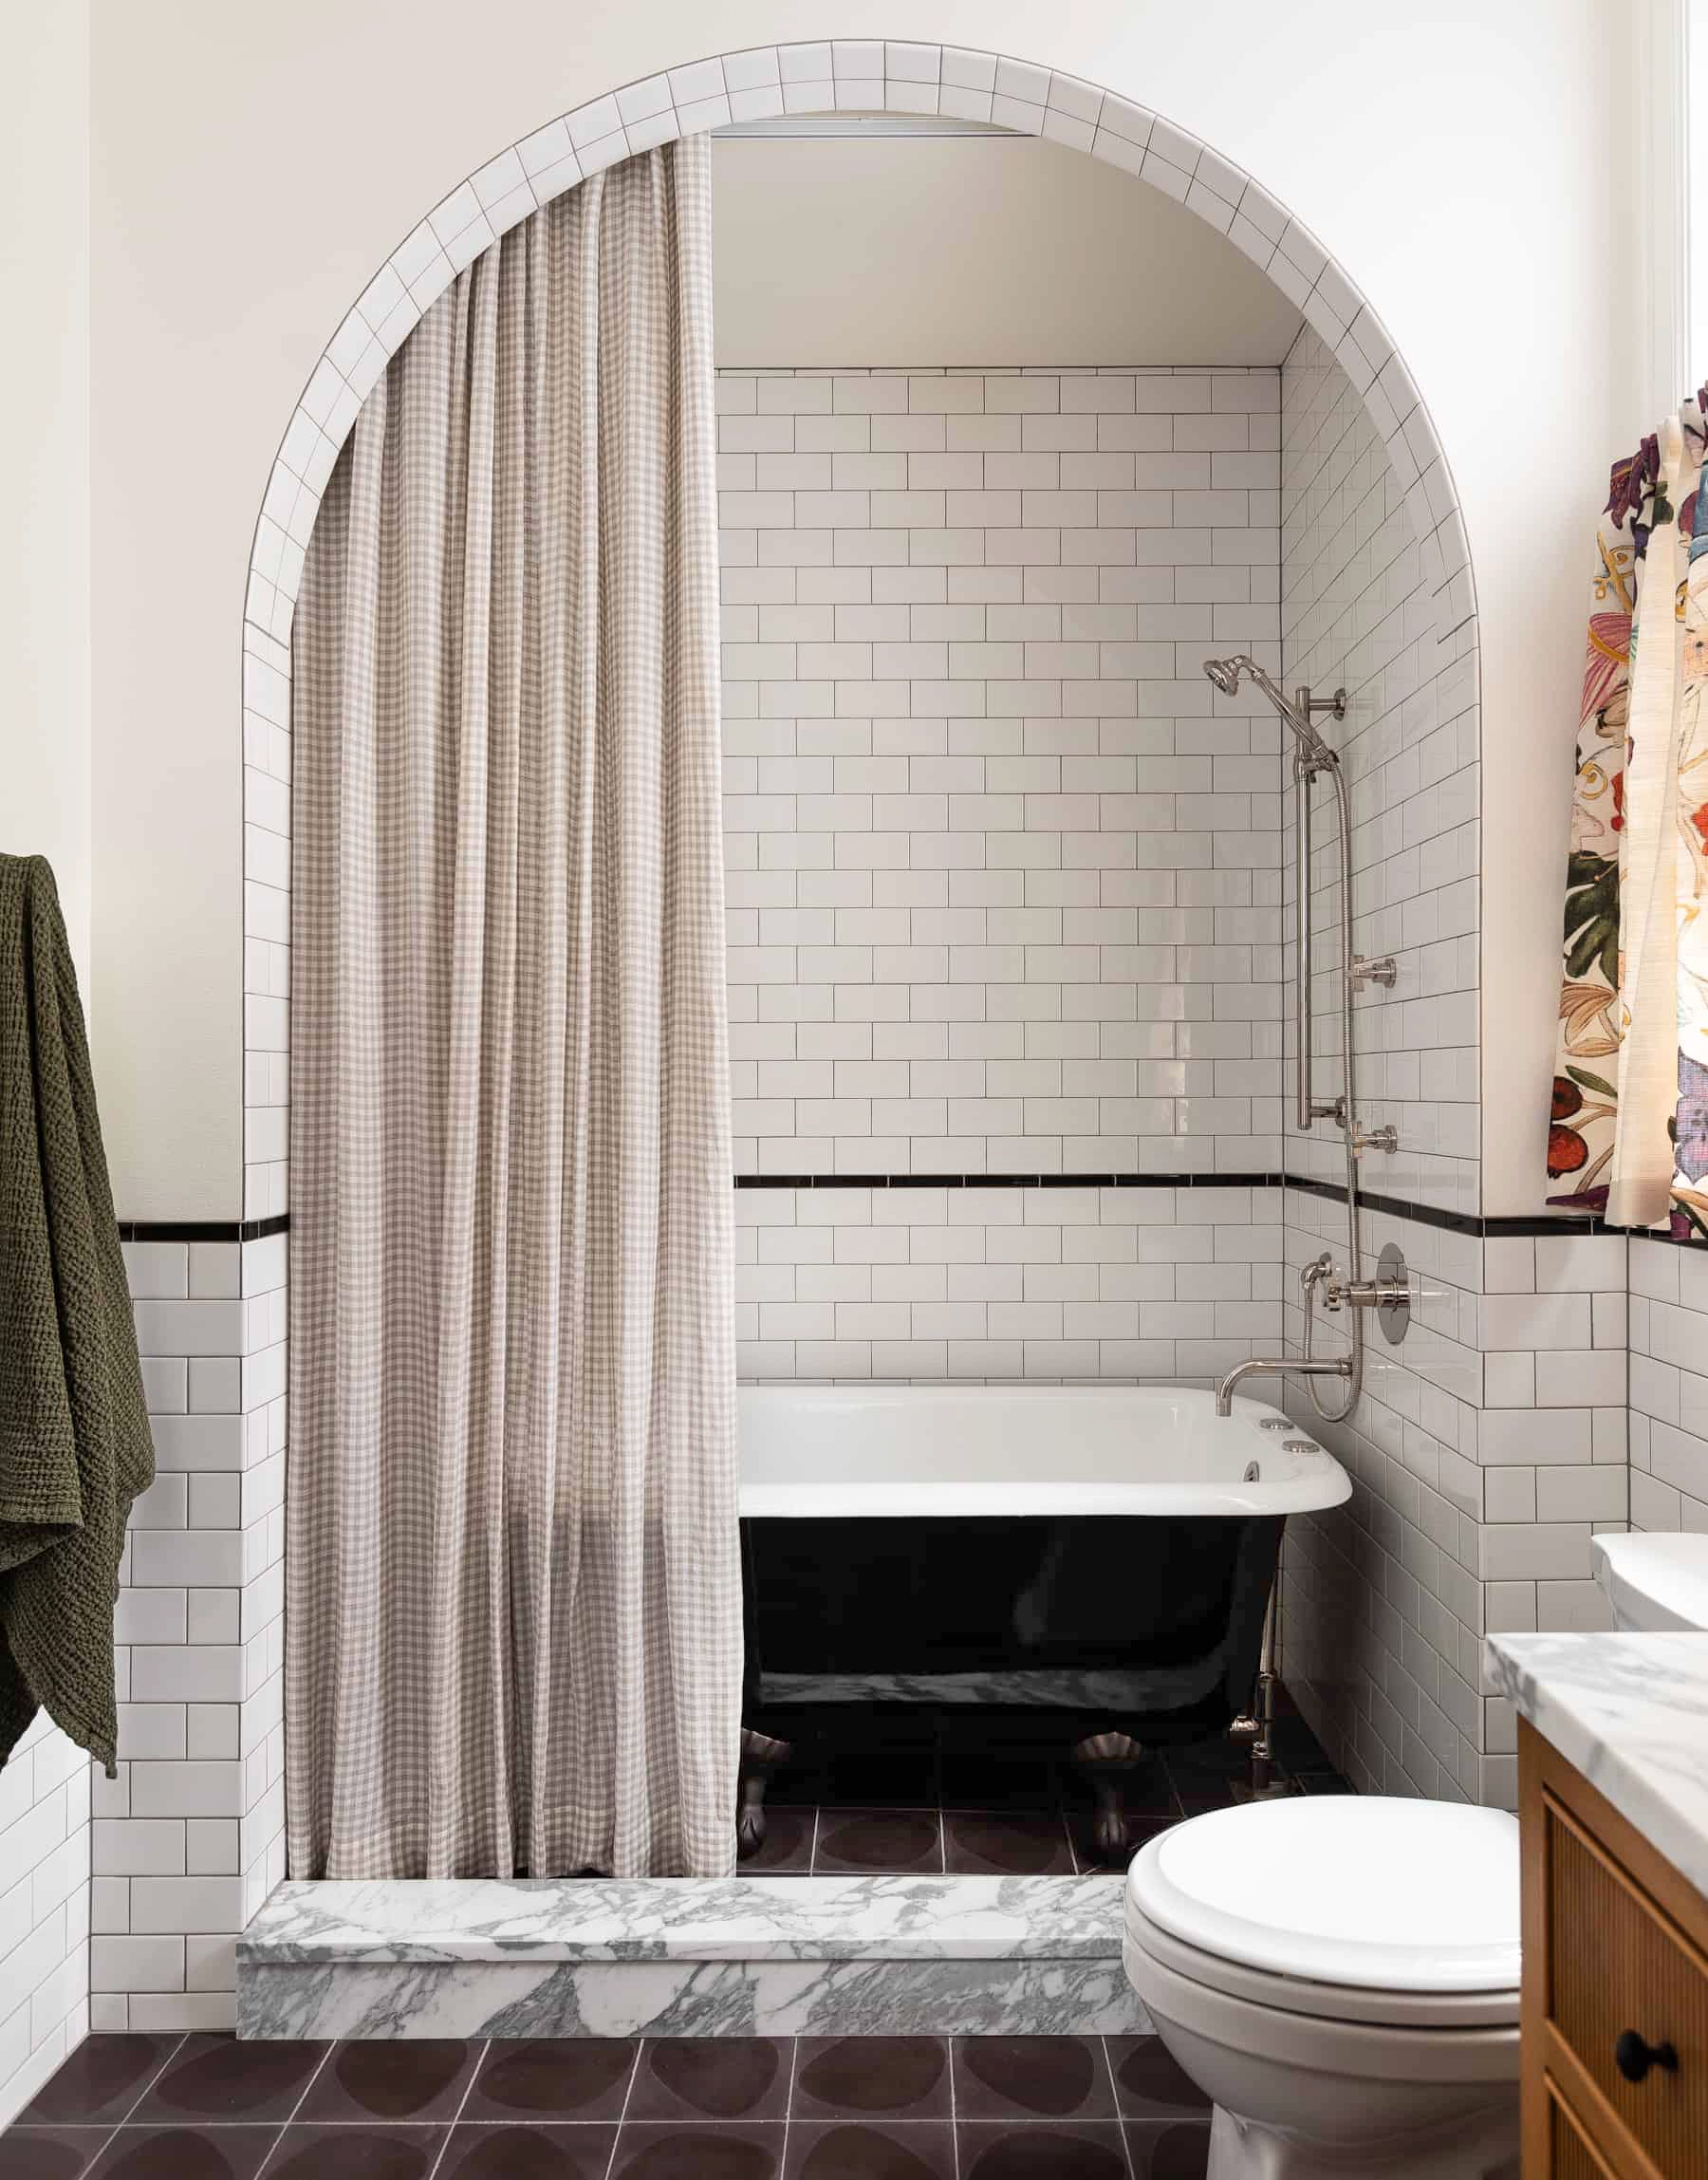 55 Bathroom Tile Ideas Bath, Bathroom Tile Floors Pictures